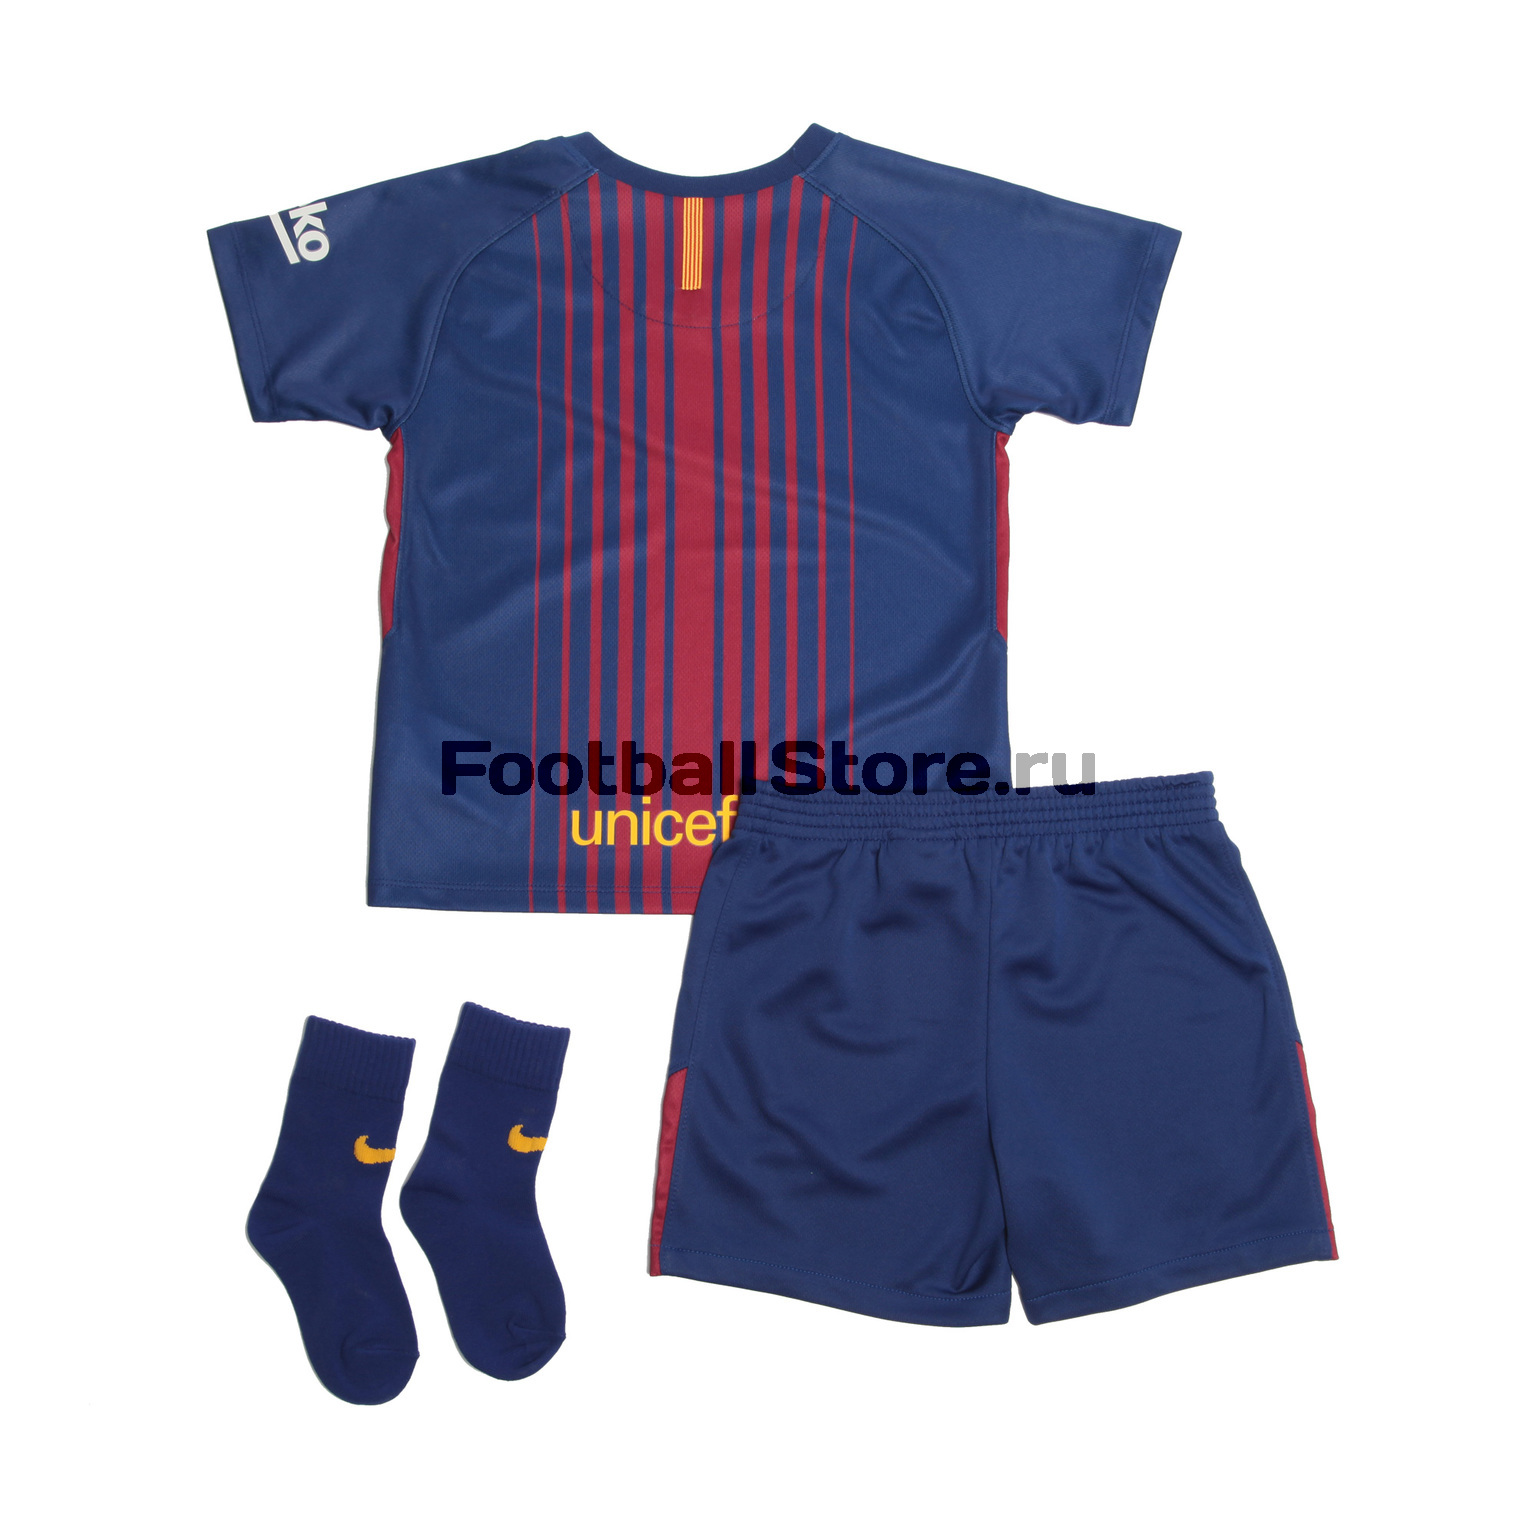 Комплект формы для малышей Nike Barcelona Home 847319-456